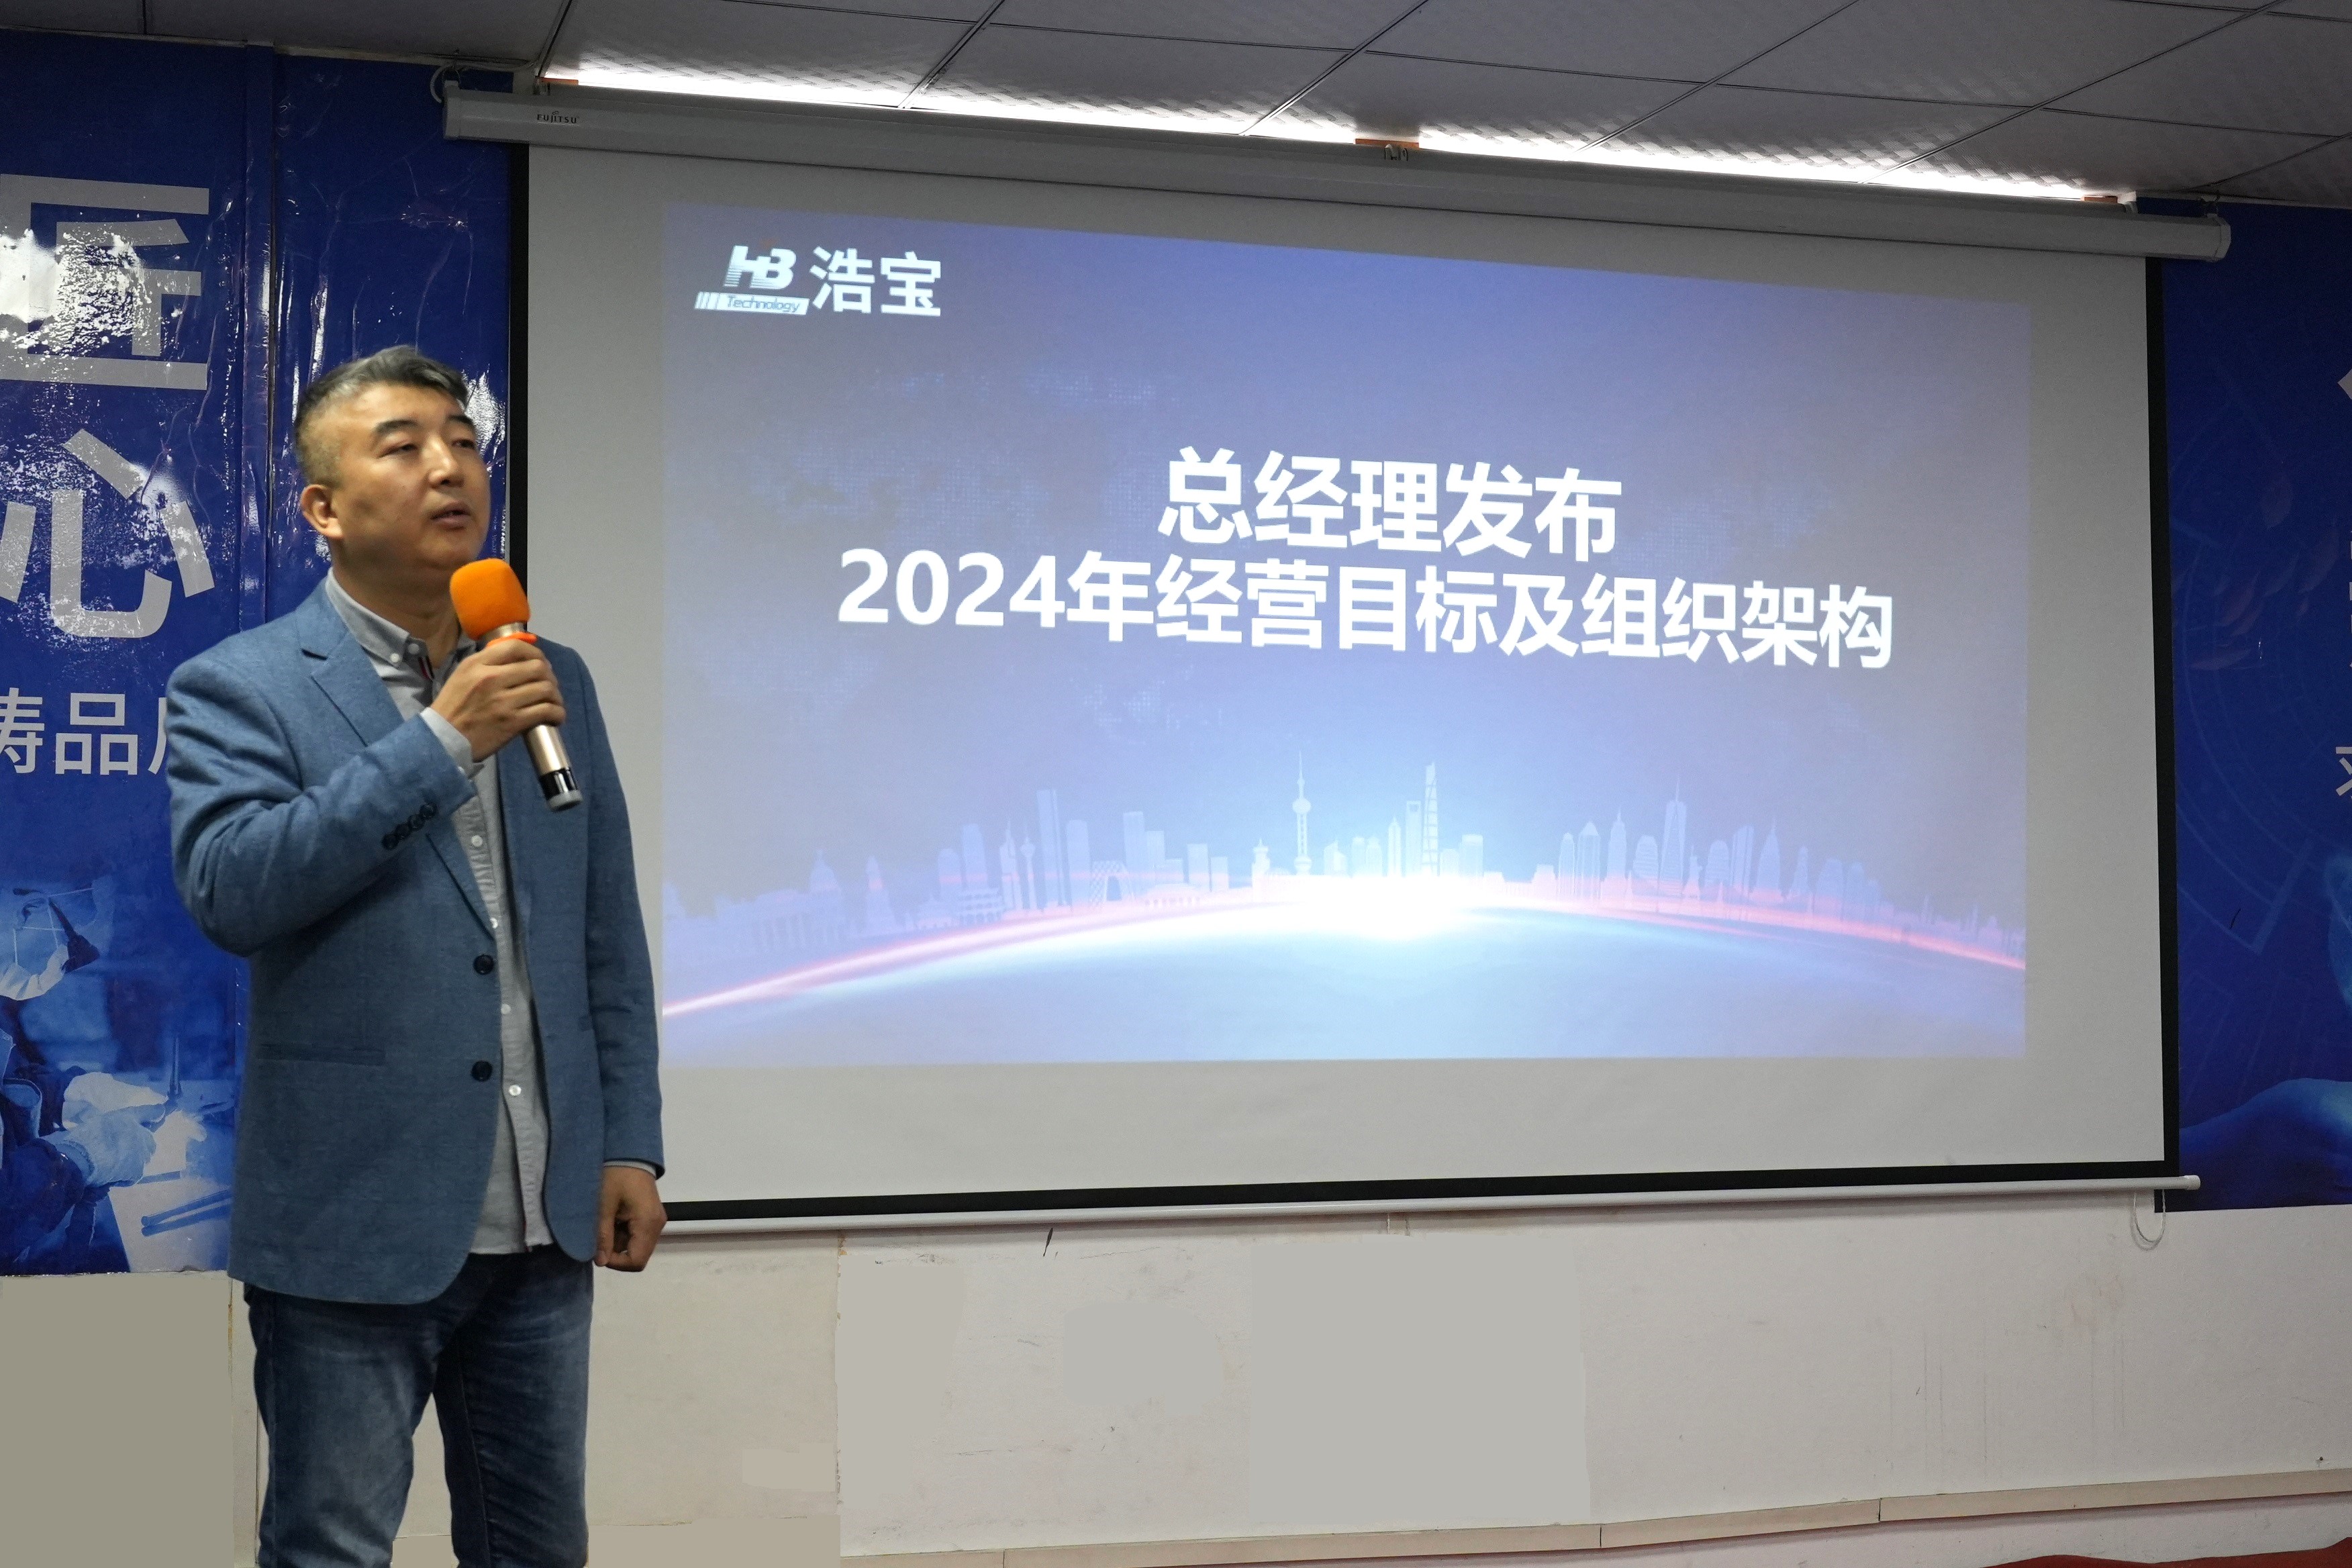 浩宝技术总经理孙浩发布24年经营目标